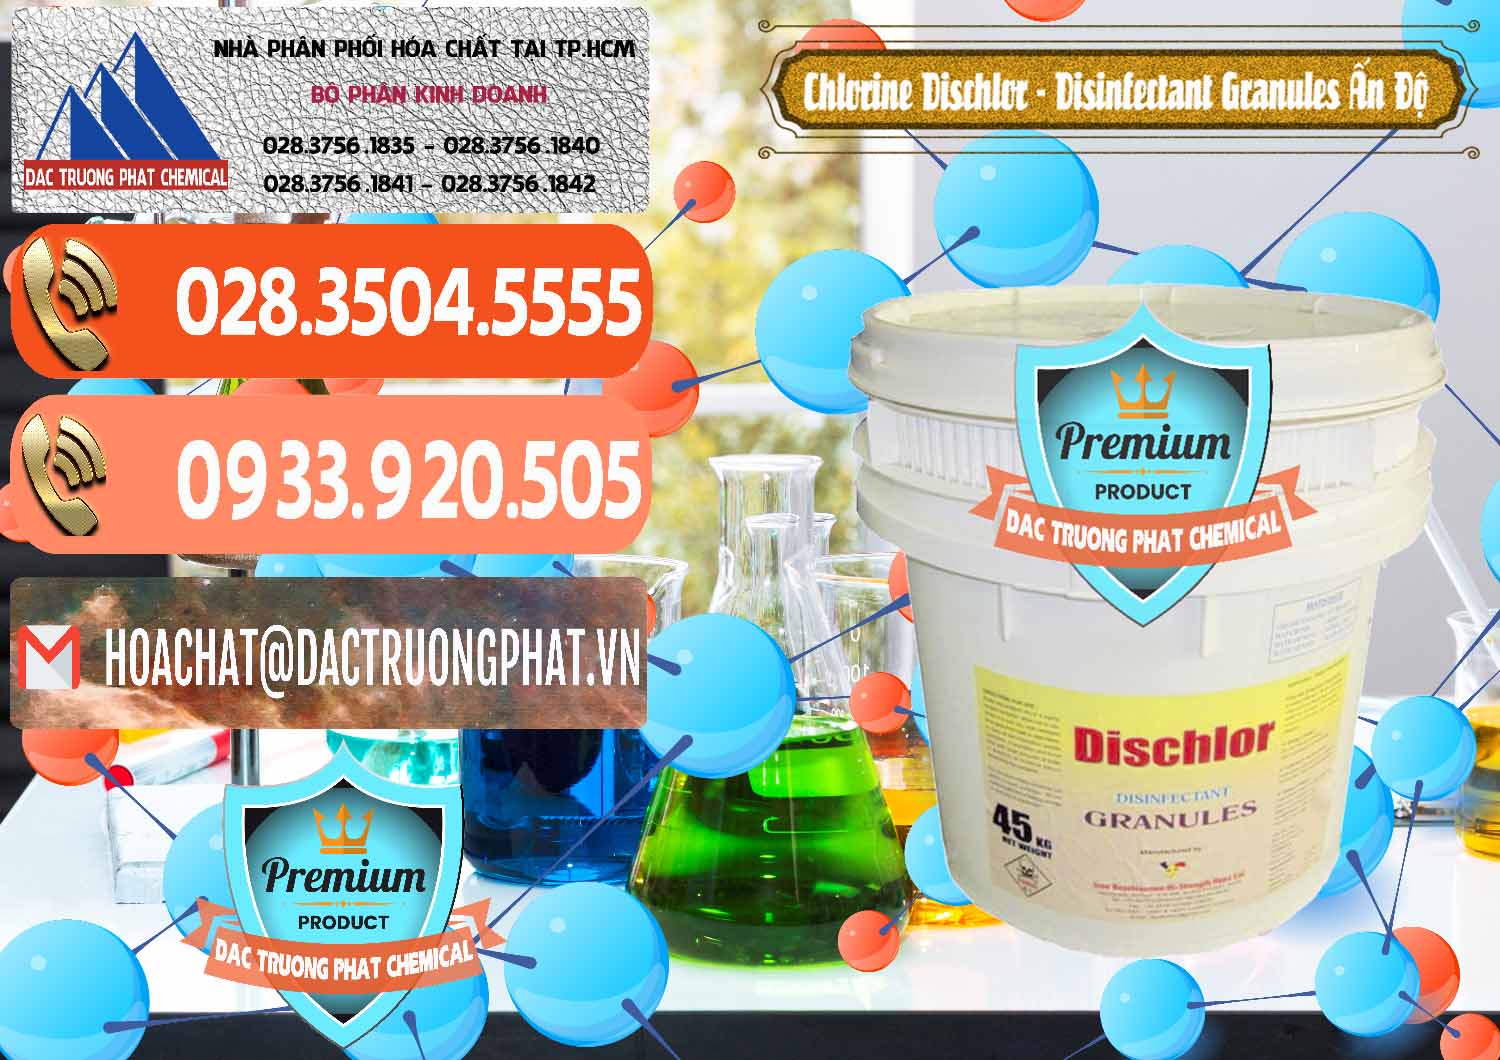 Đơn vị chuyên kinh doanh và bán Chlorine – Clorin 70% Dischlor - Disinfectant Granules Ấn Độ India - 0248 - Công ty bán & cung cấp hóa chất tại TP.HCM - hoachatmientay.com